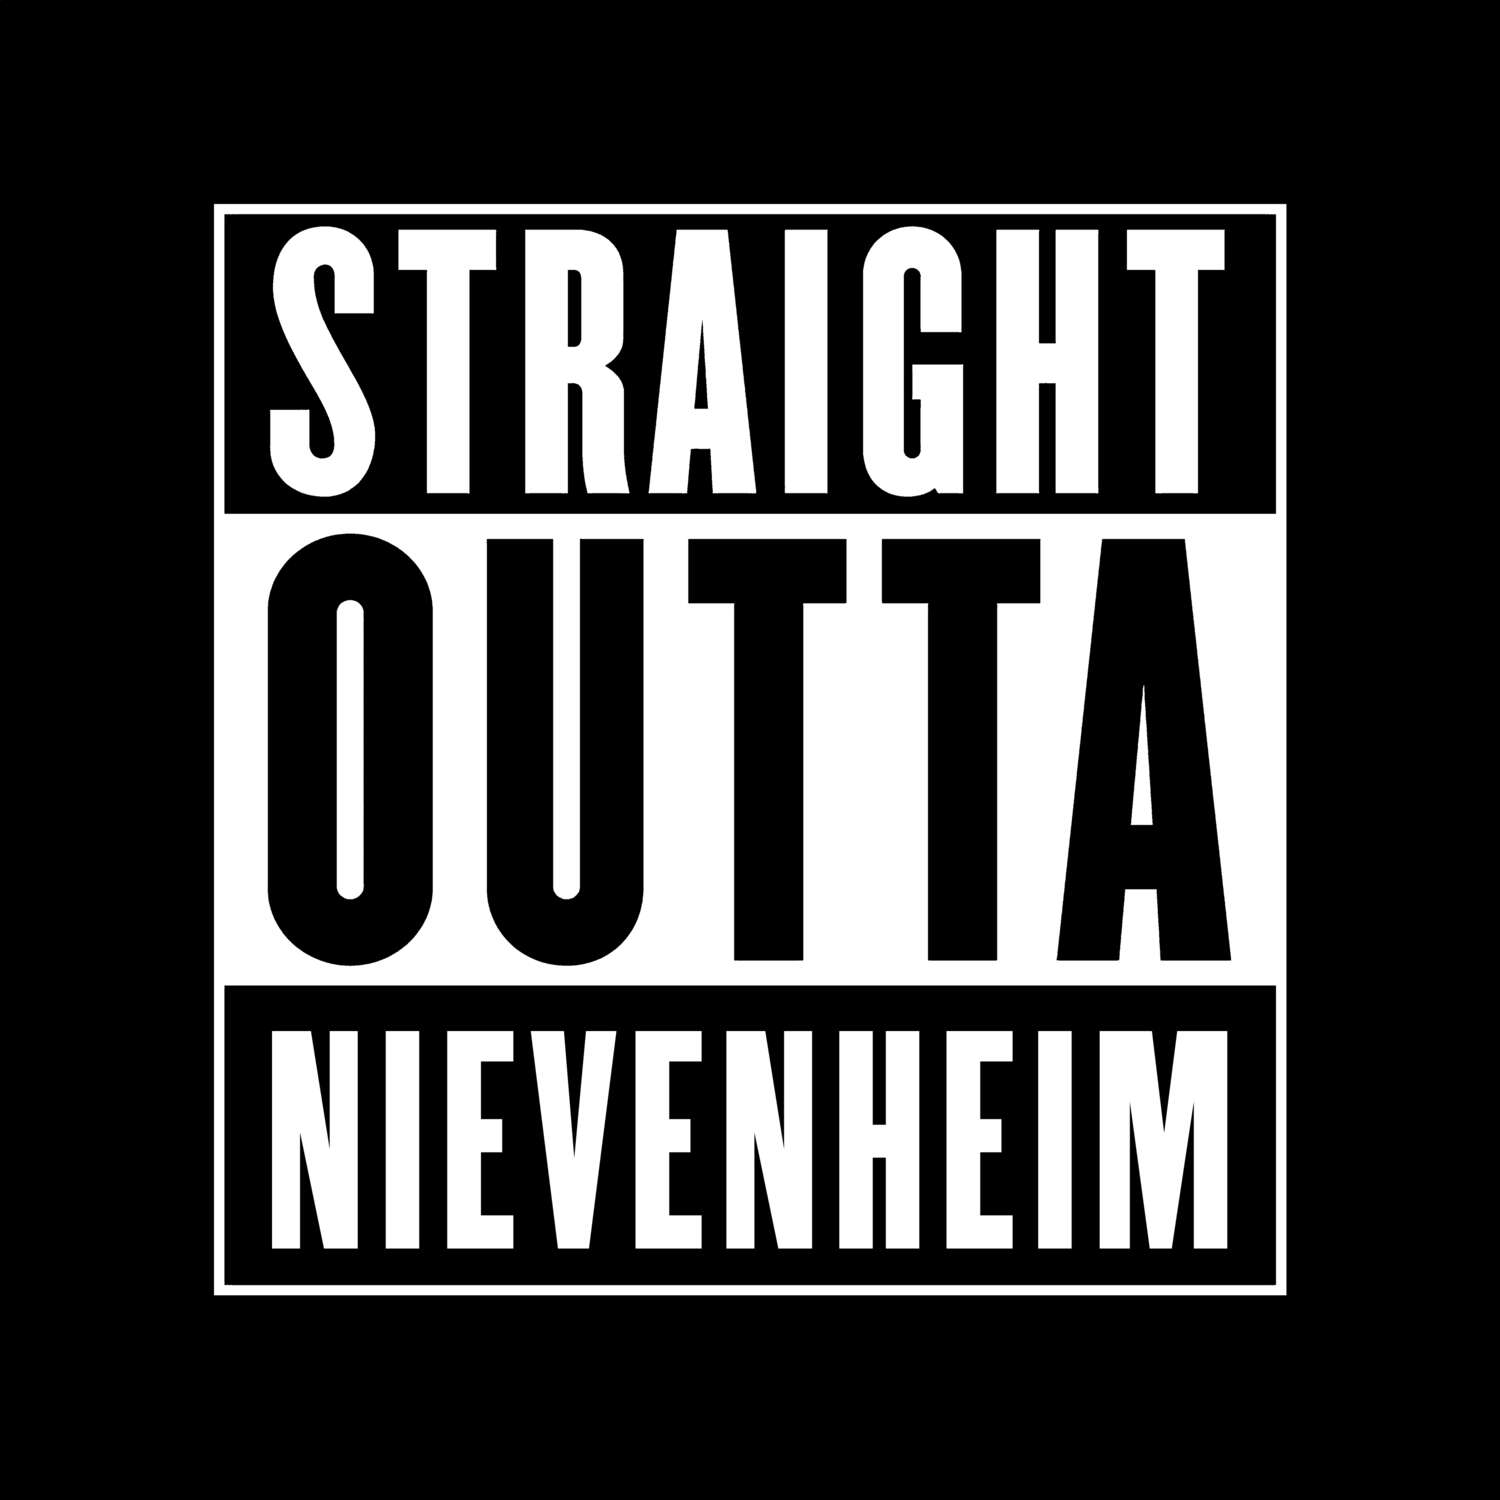 Nievenheim T-Shirt »Straight Outta«